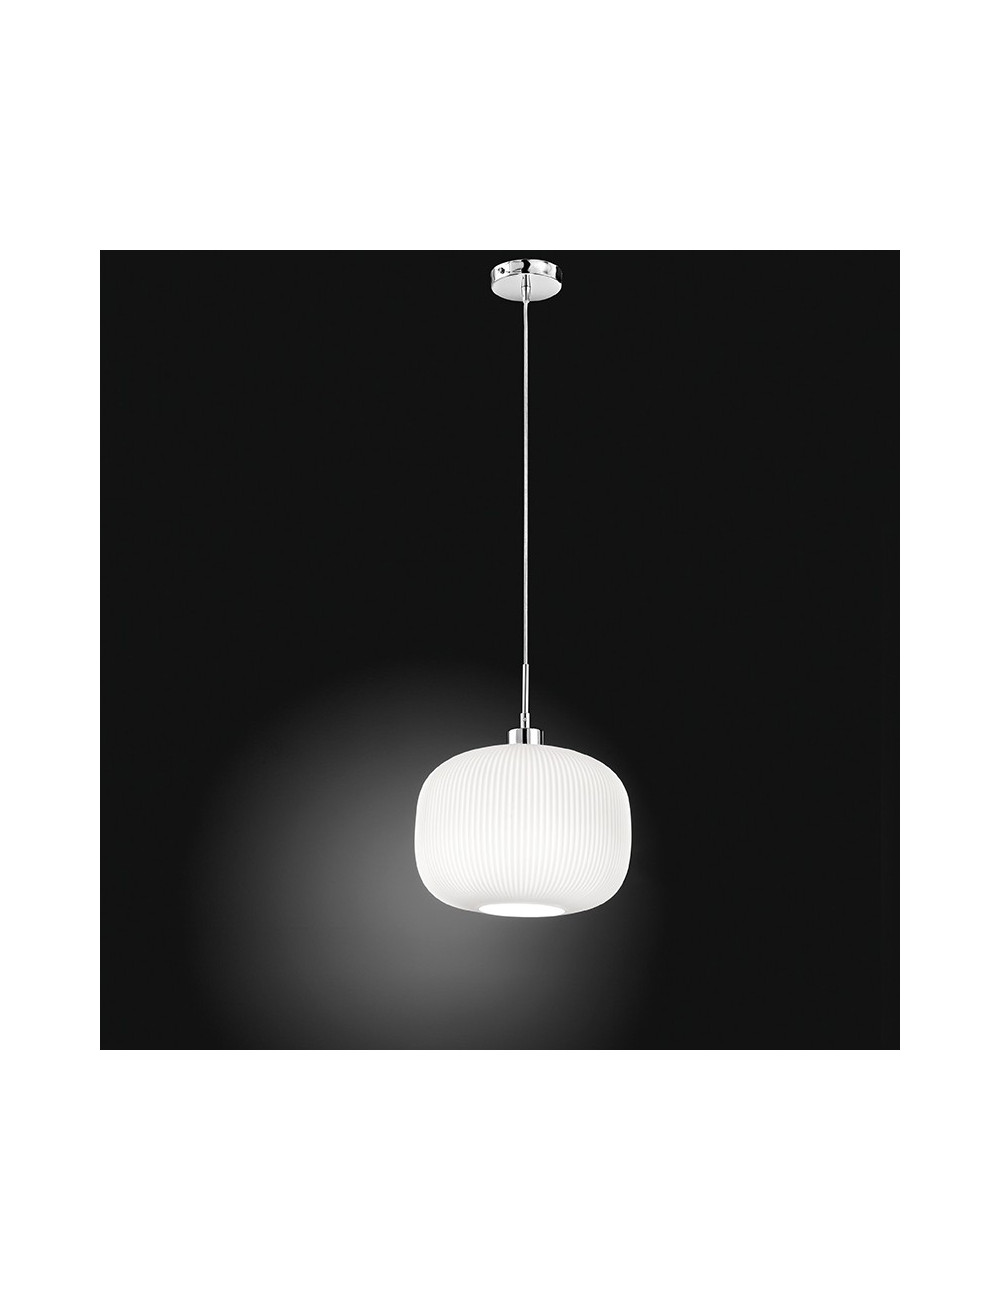 DULCE 6342 Perenz iluminación | Lámpara colgante Moderna de Vidrio Blanco Acanalado